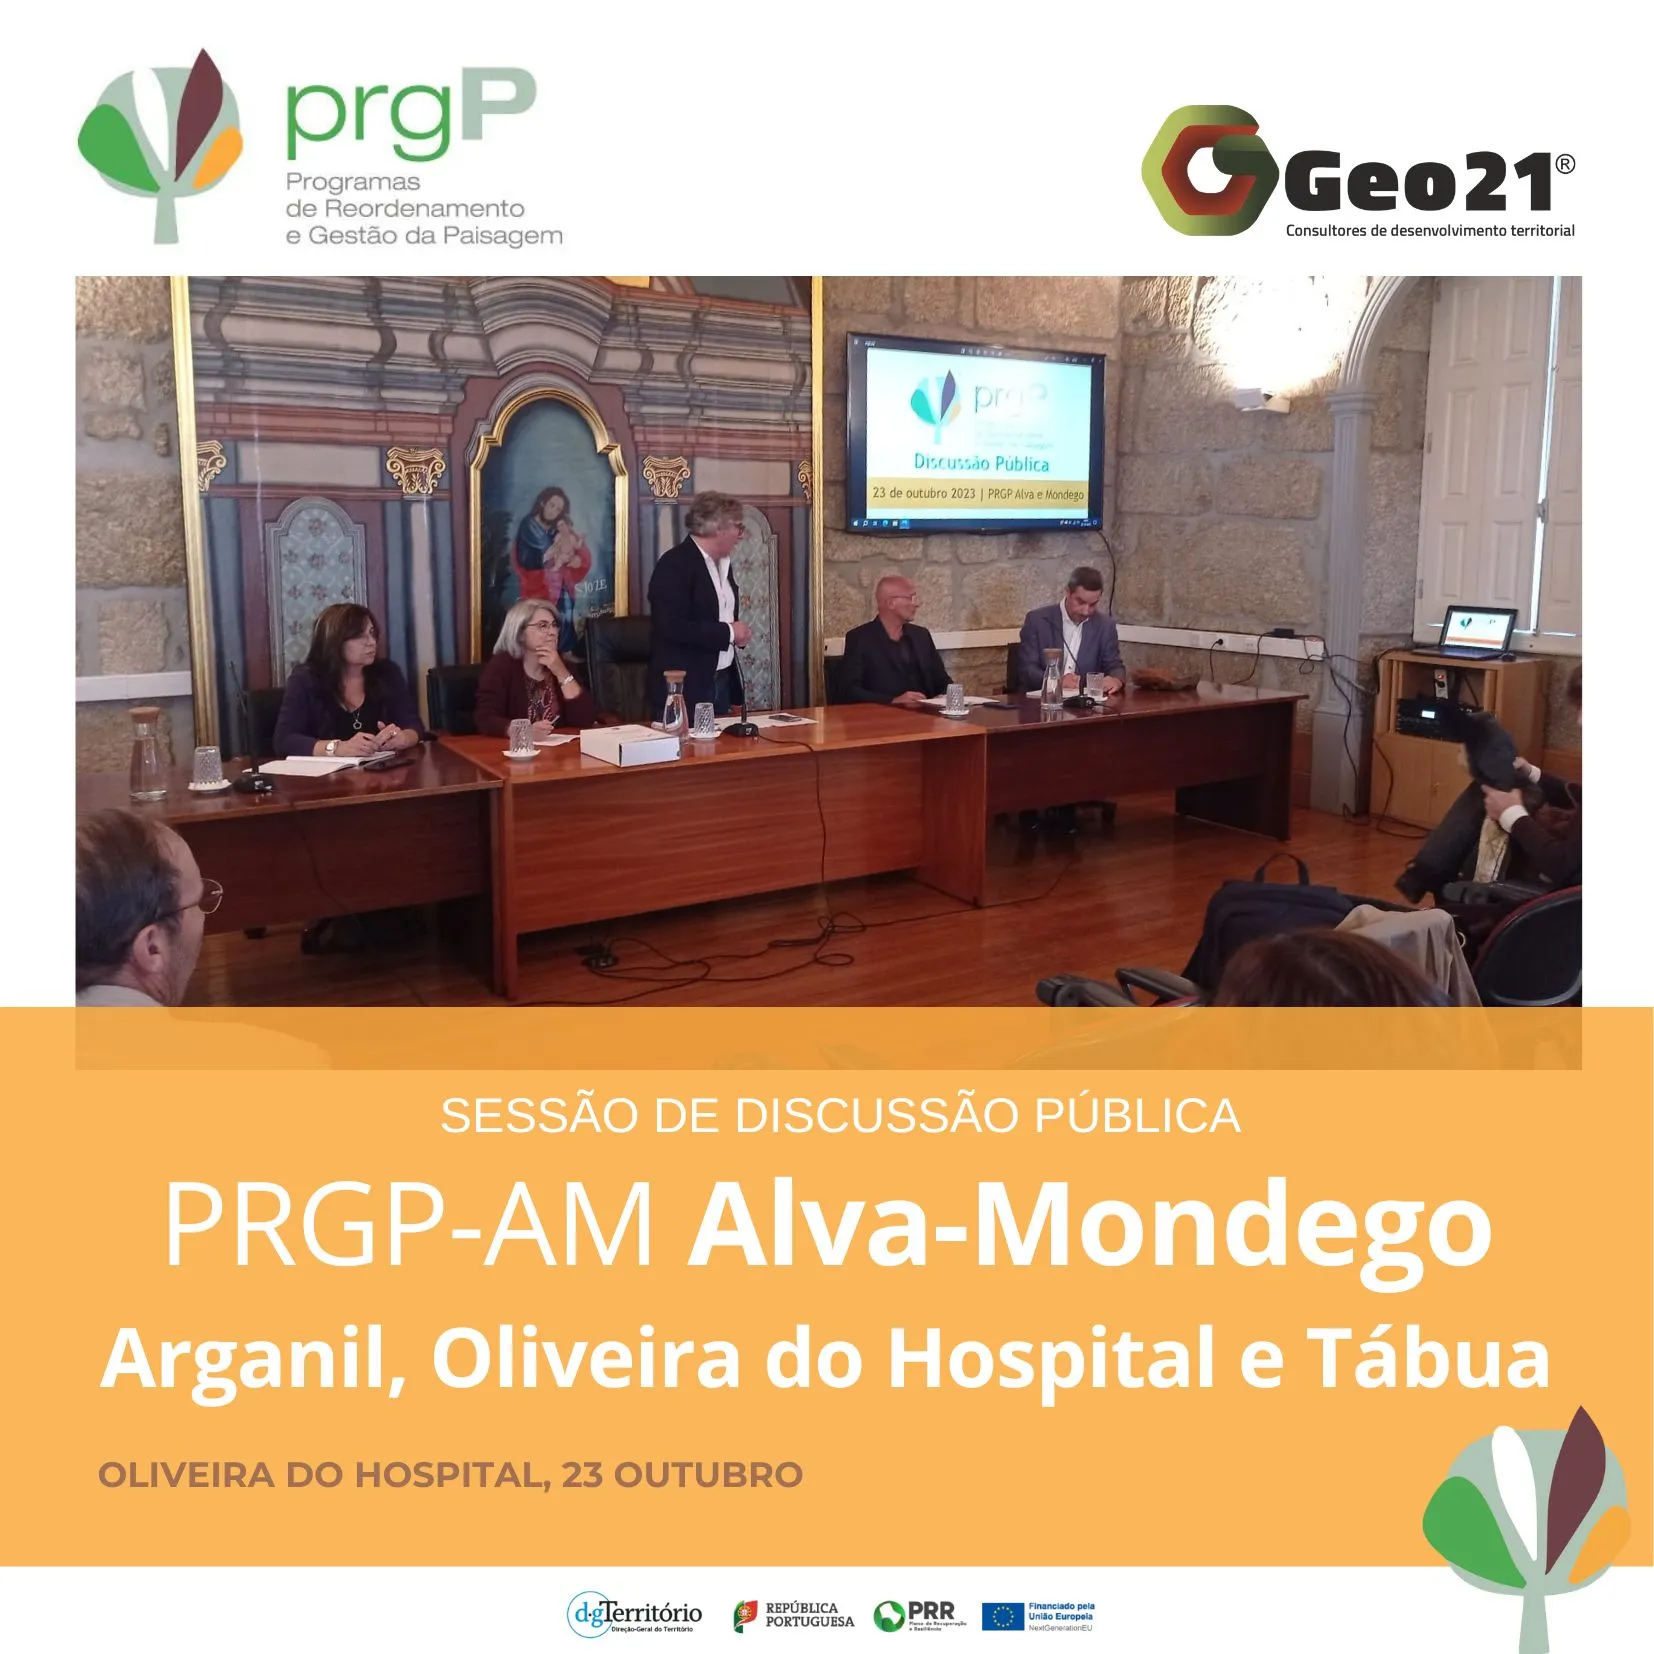 Apresentação Programa de Reordenamento e Gestão da Paisagem do Alva e Mondego (PRGP-AM)